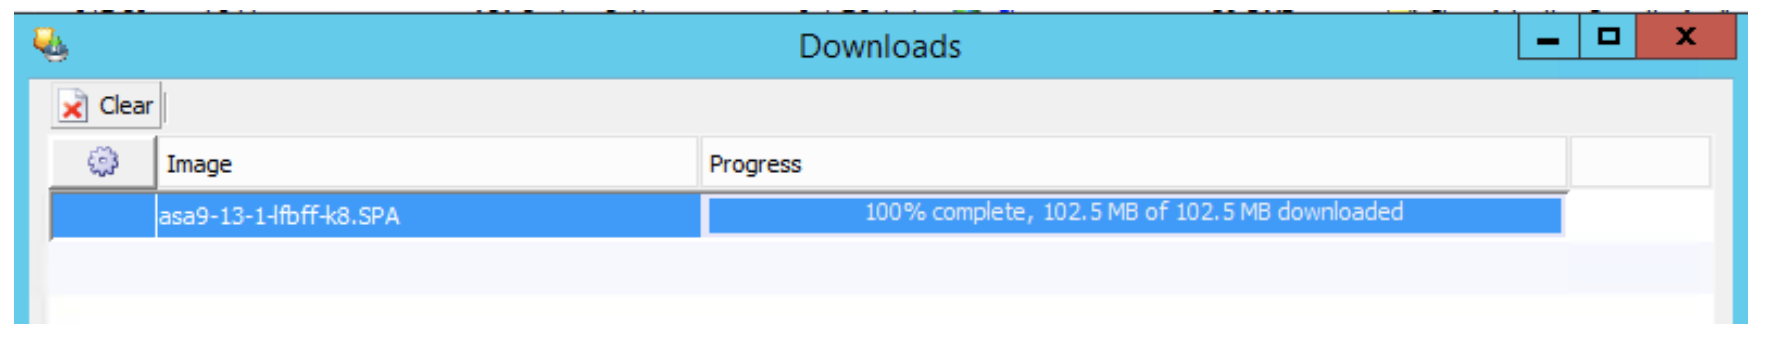 screenshot of download in progress